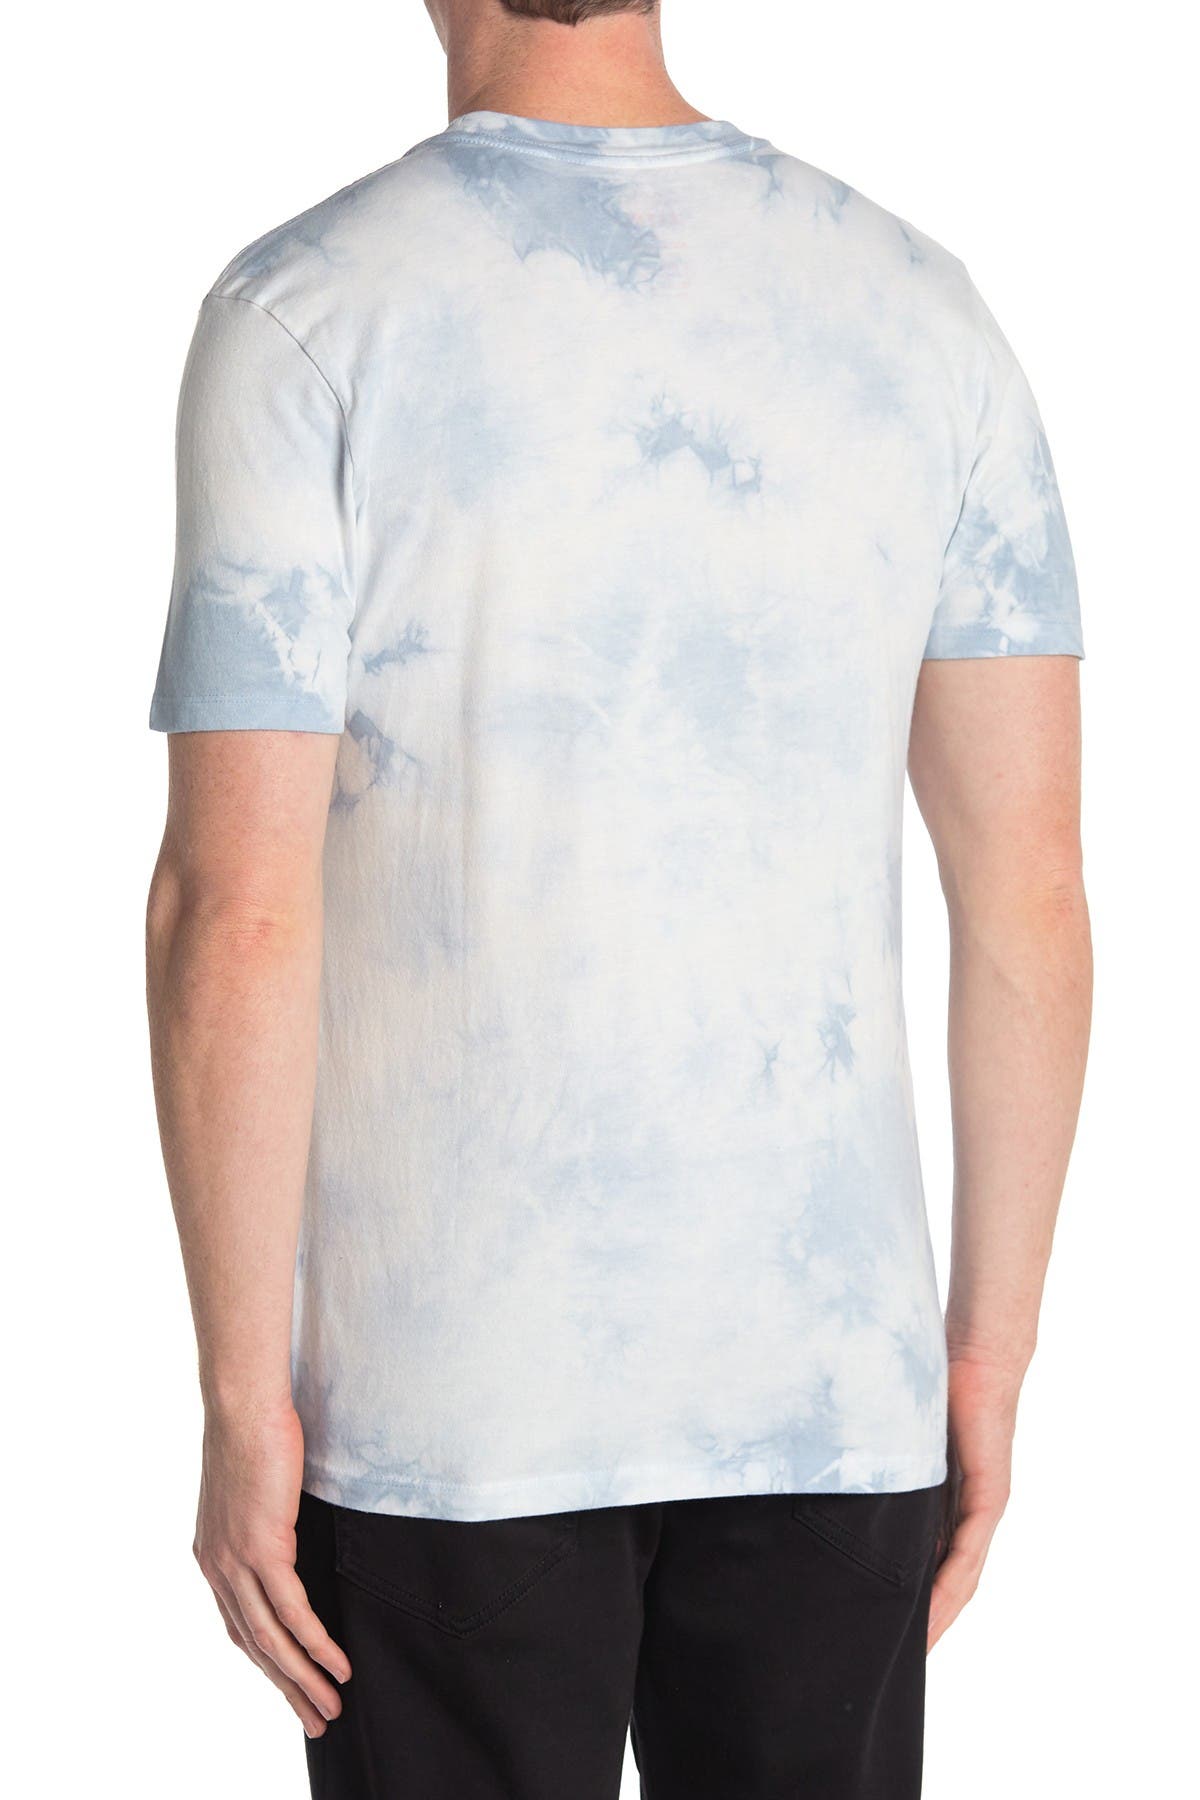 Altru Grow Tie-dye Print T-shirt In Pale Blue Tie Dye